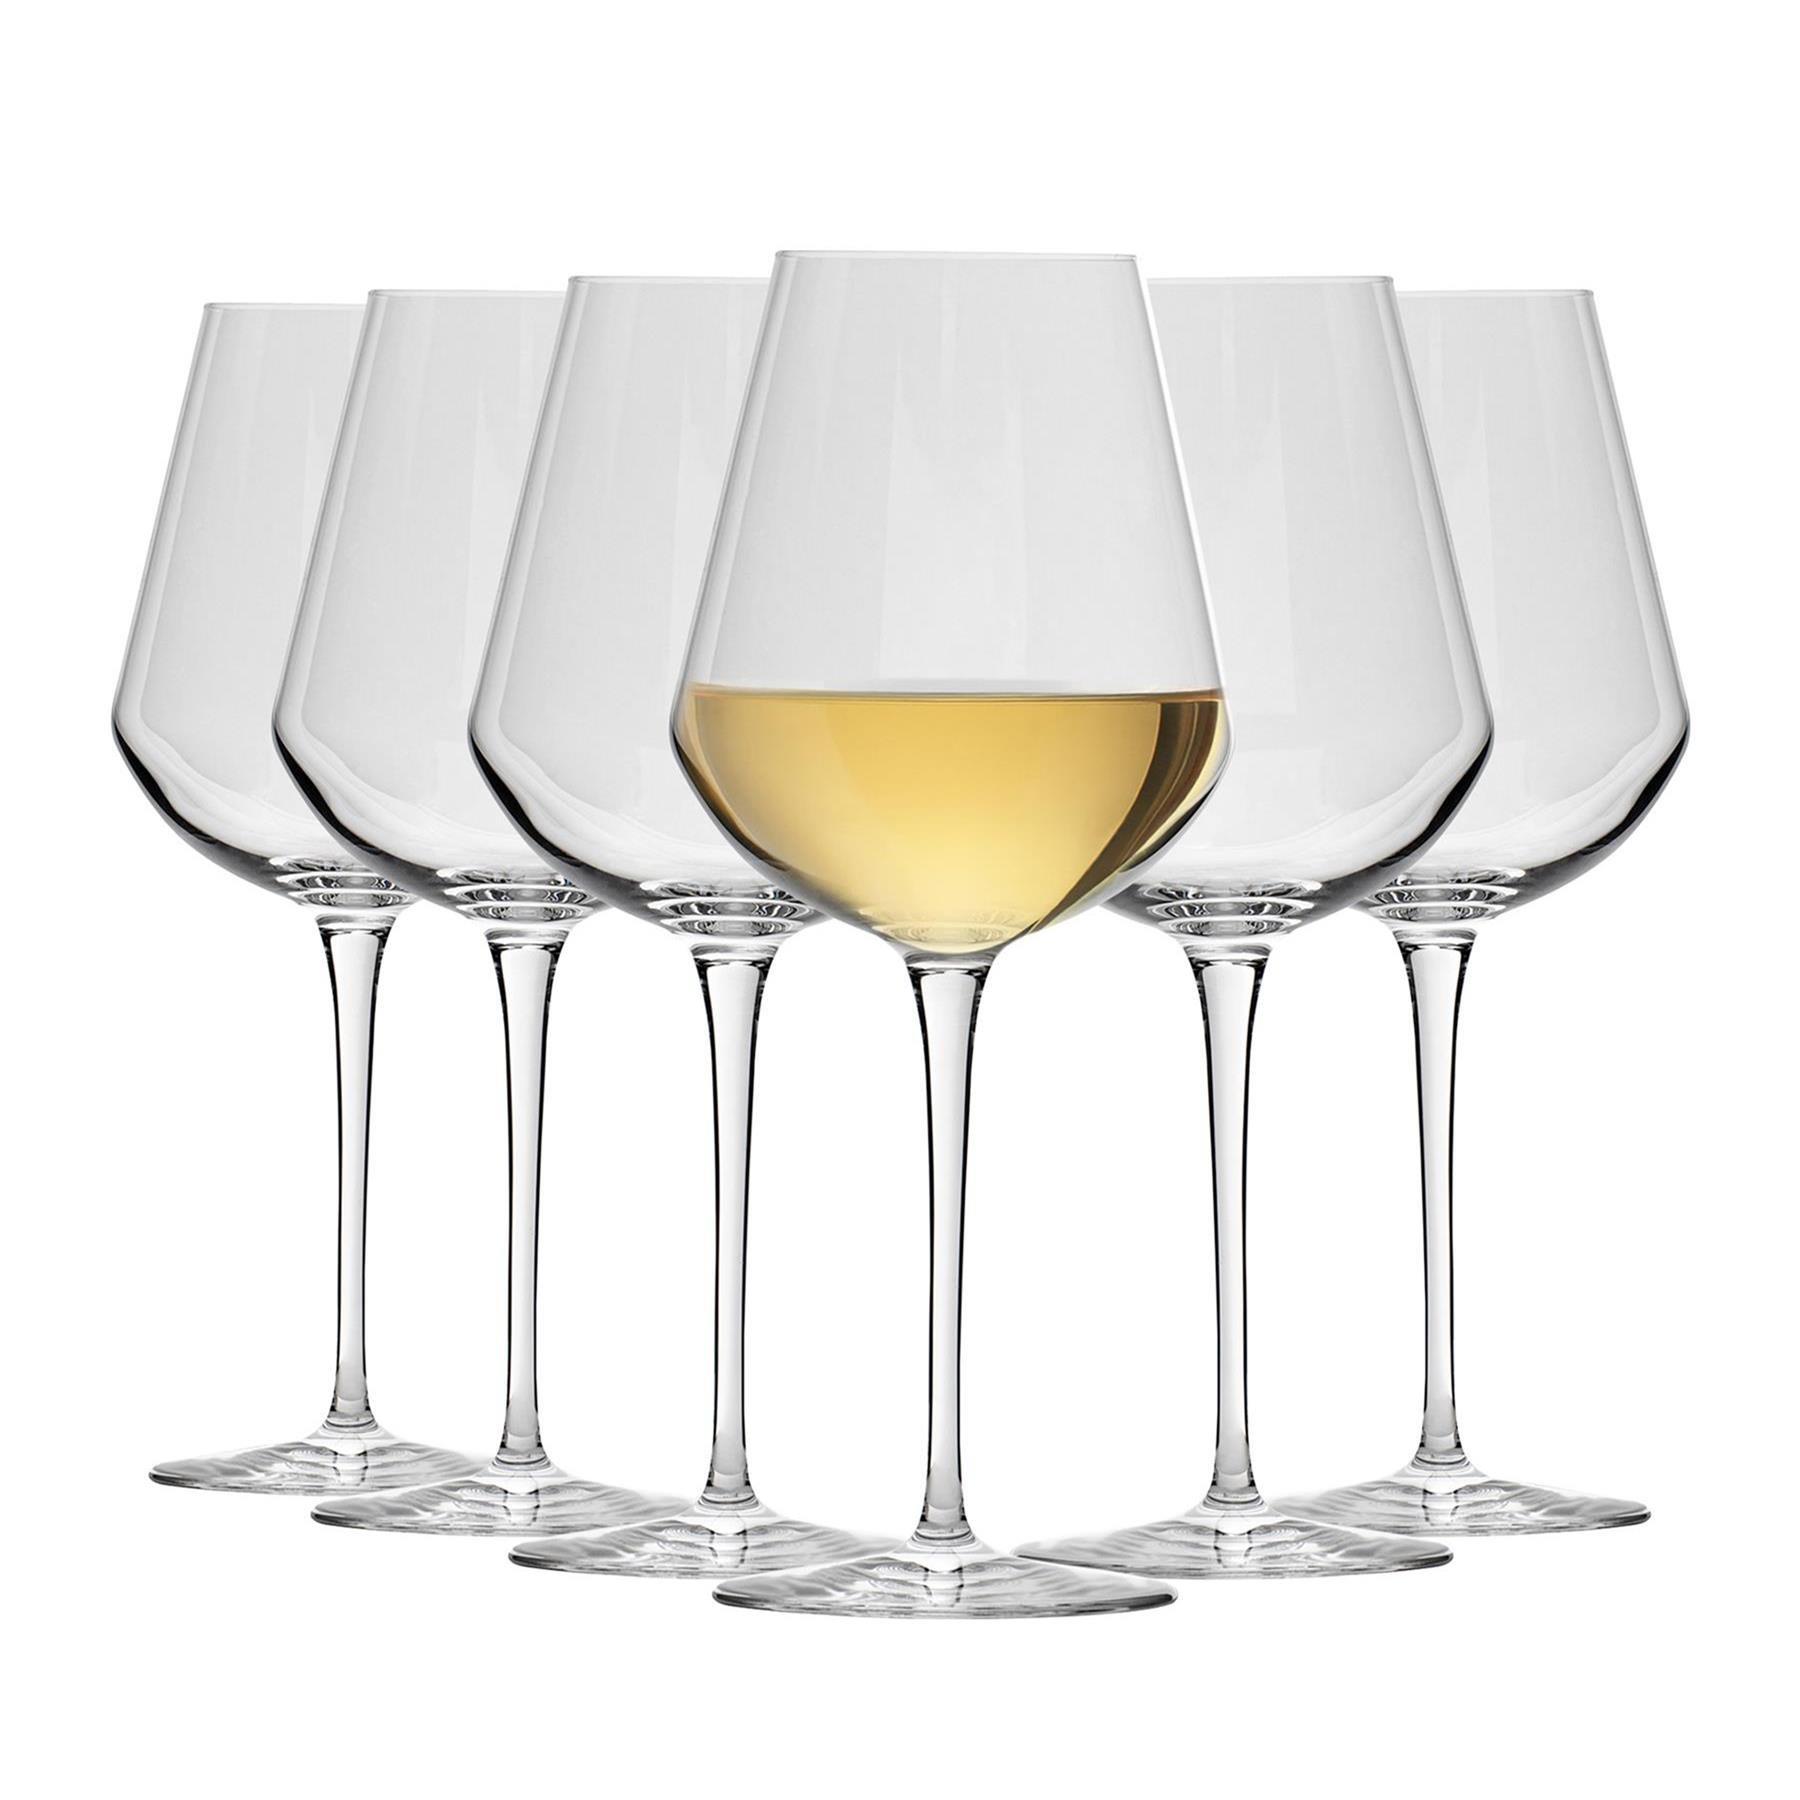 Photos - Glass Bormioli Rocco Inalto Uno White Wine Glasses - 470ml - Pack of 12 